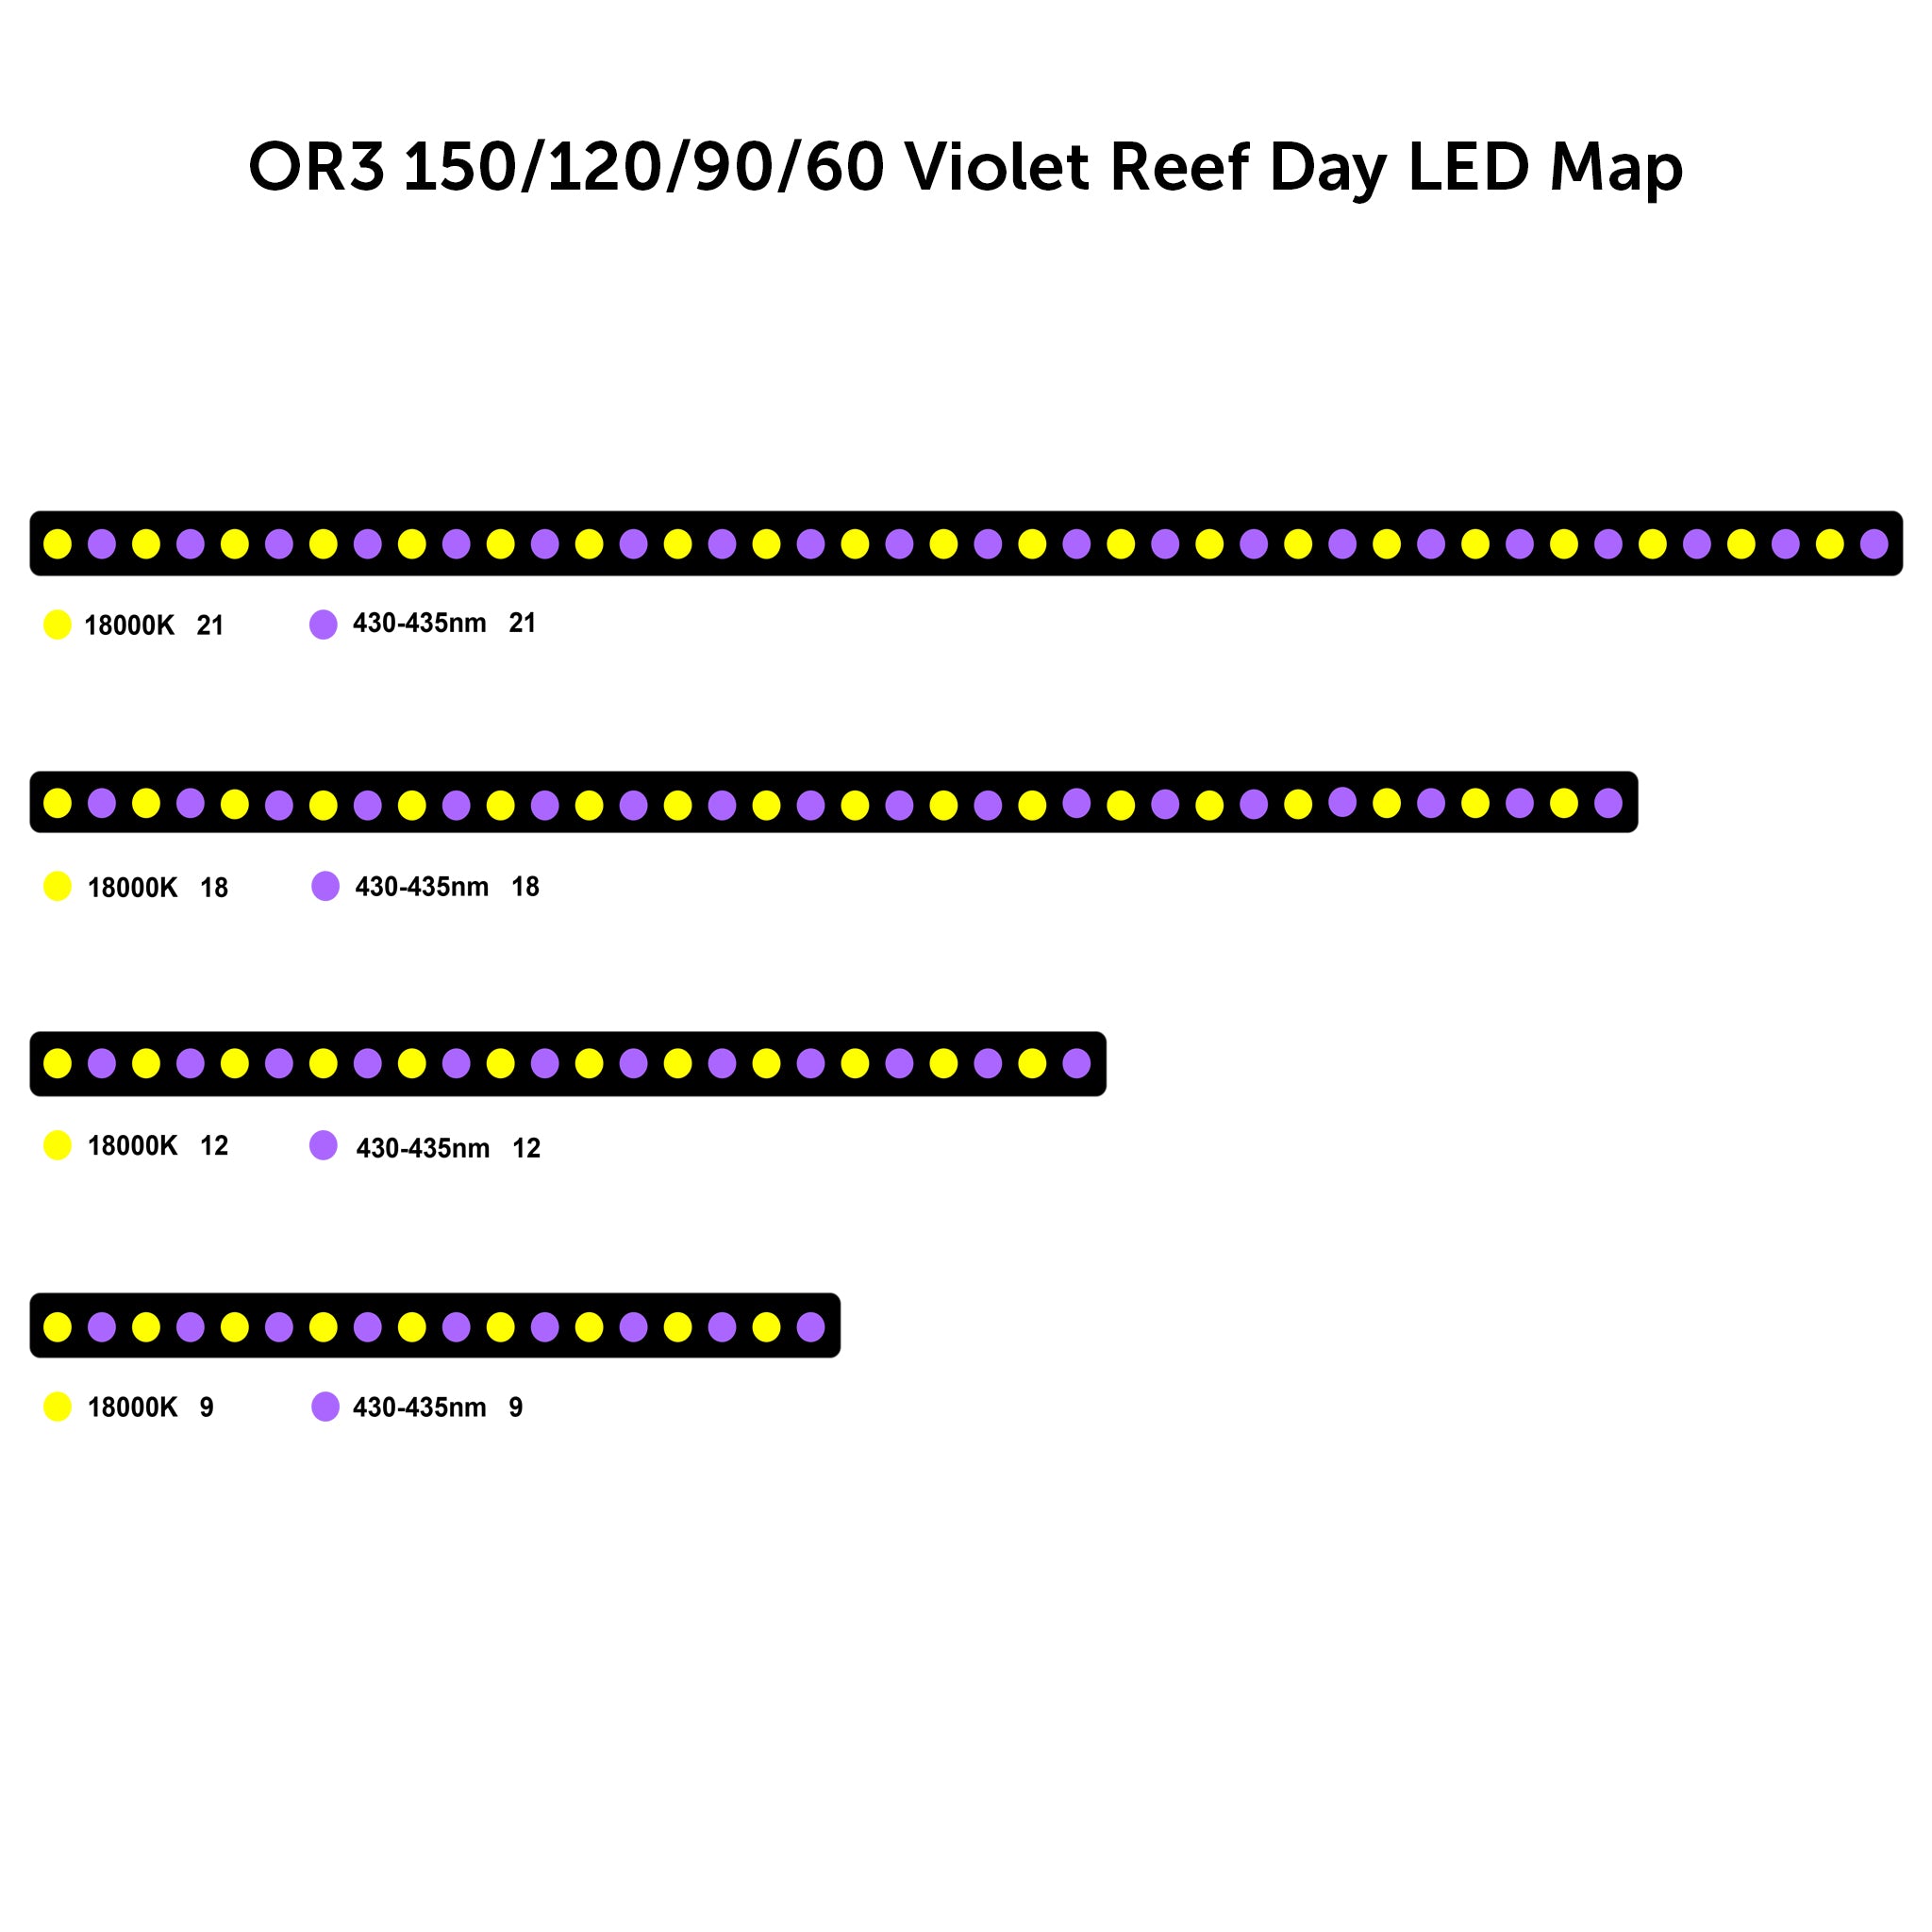 OR3 Violet Reef Day - แถบ LED พิพิธภัณฑ์สัตว์น้ำแนวปะการัง